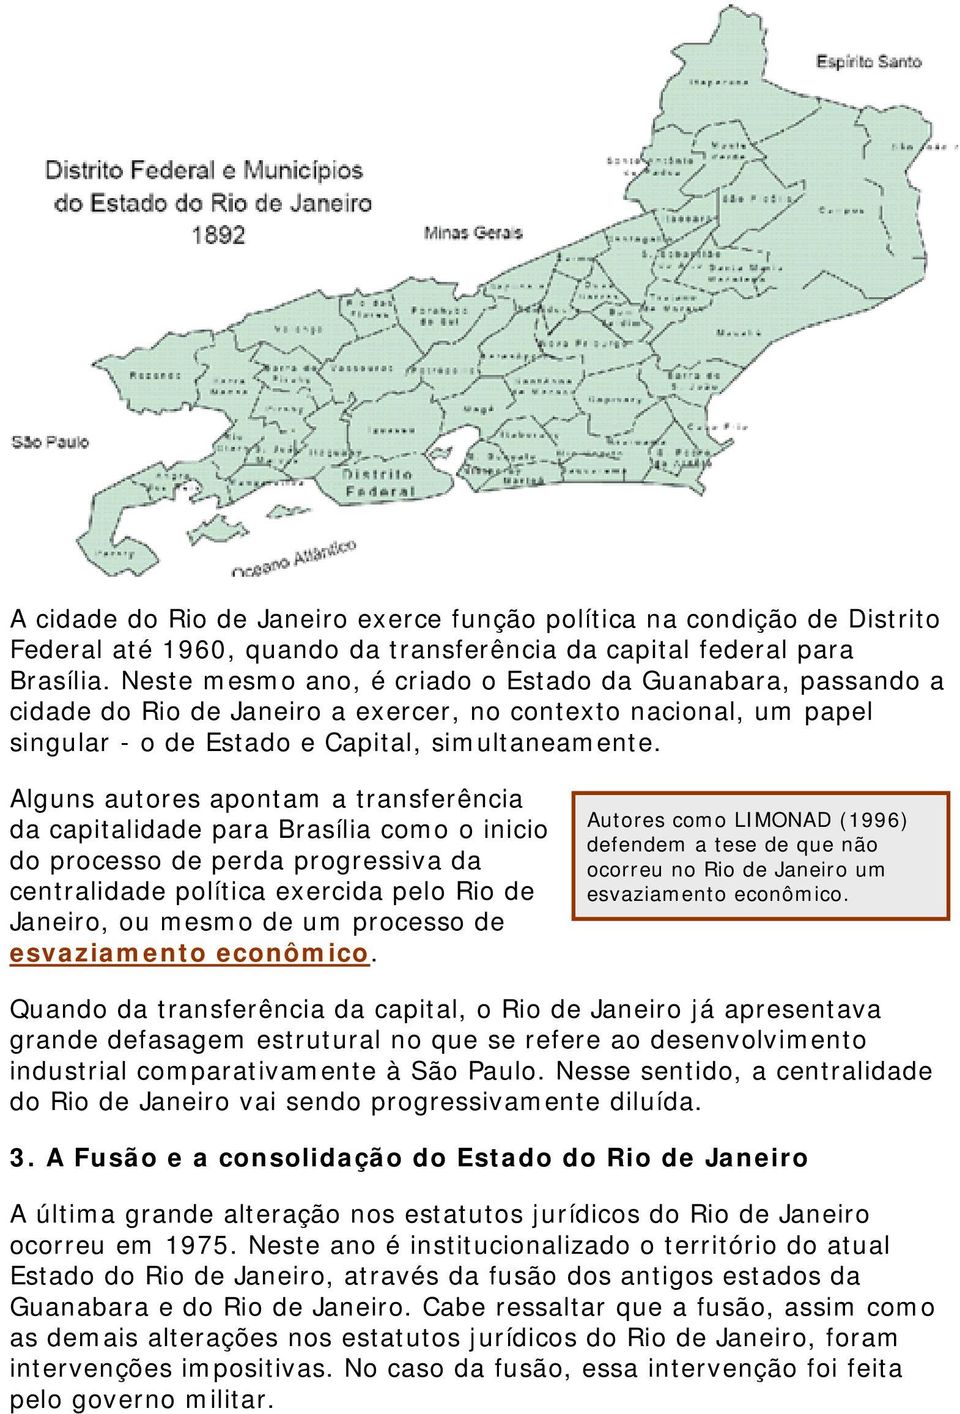 Alguns autores apontam a transferência da capitalidade para Brasília como o inicio do processo de perda progressiva da centralidade política exercida pelo Rio de Janeiro, ou mesmo de um processo de